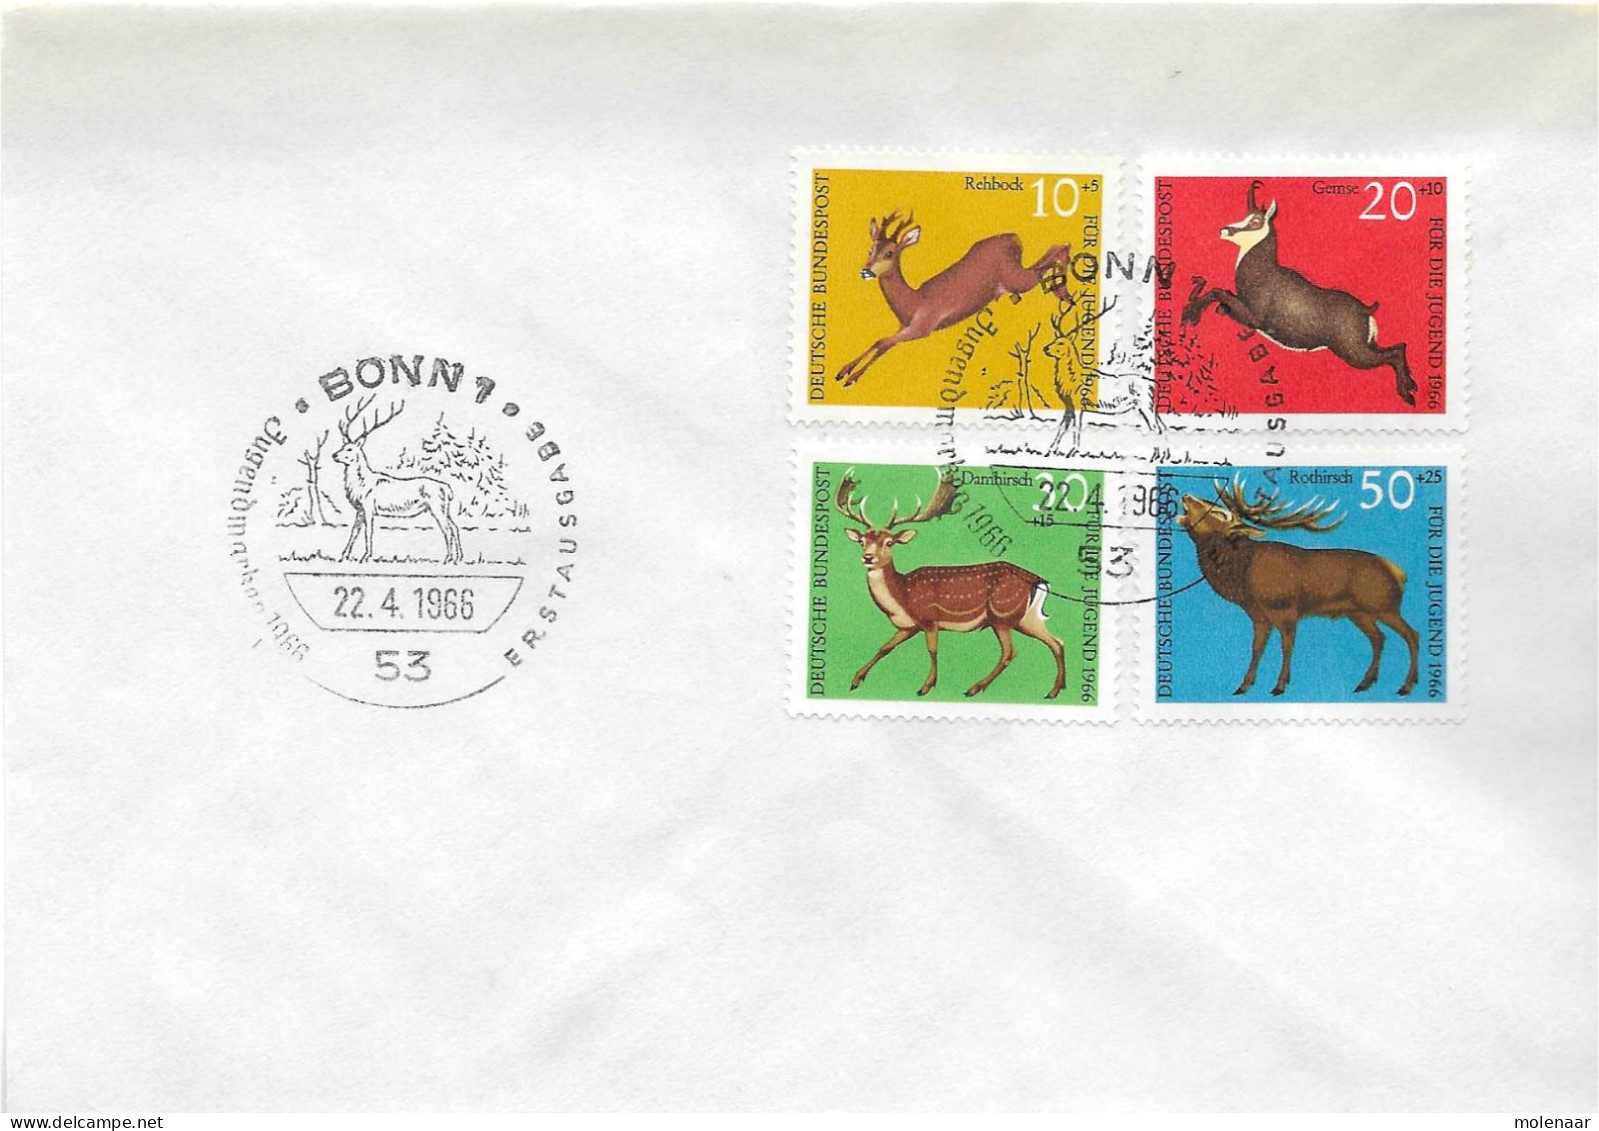 Postzegels > Europa > Duitsland > West-Duitsland > 1960-1969 > Brief Met No. 511-514 (17380) - Briefe U. Dokumente